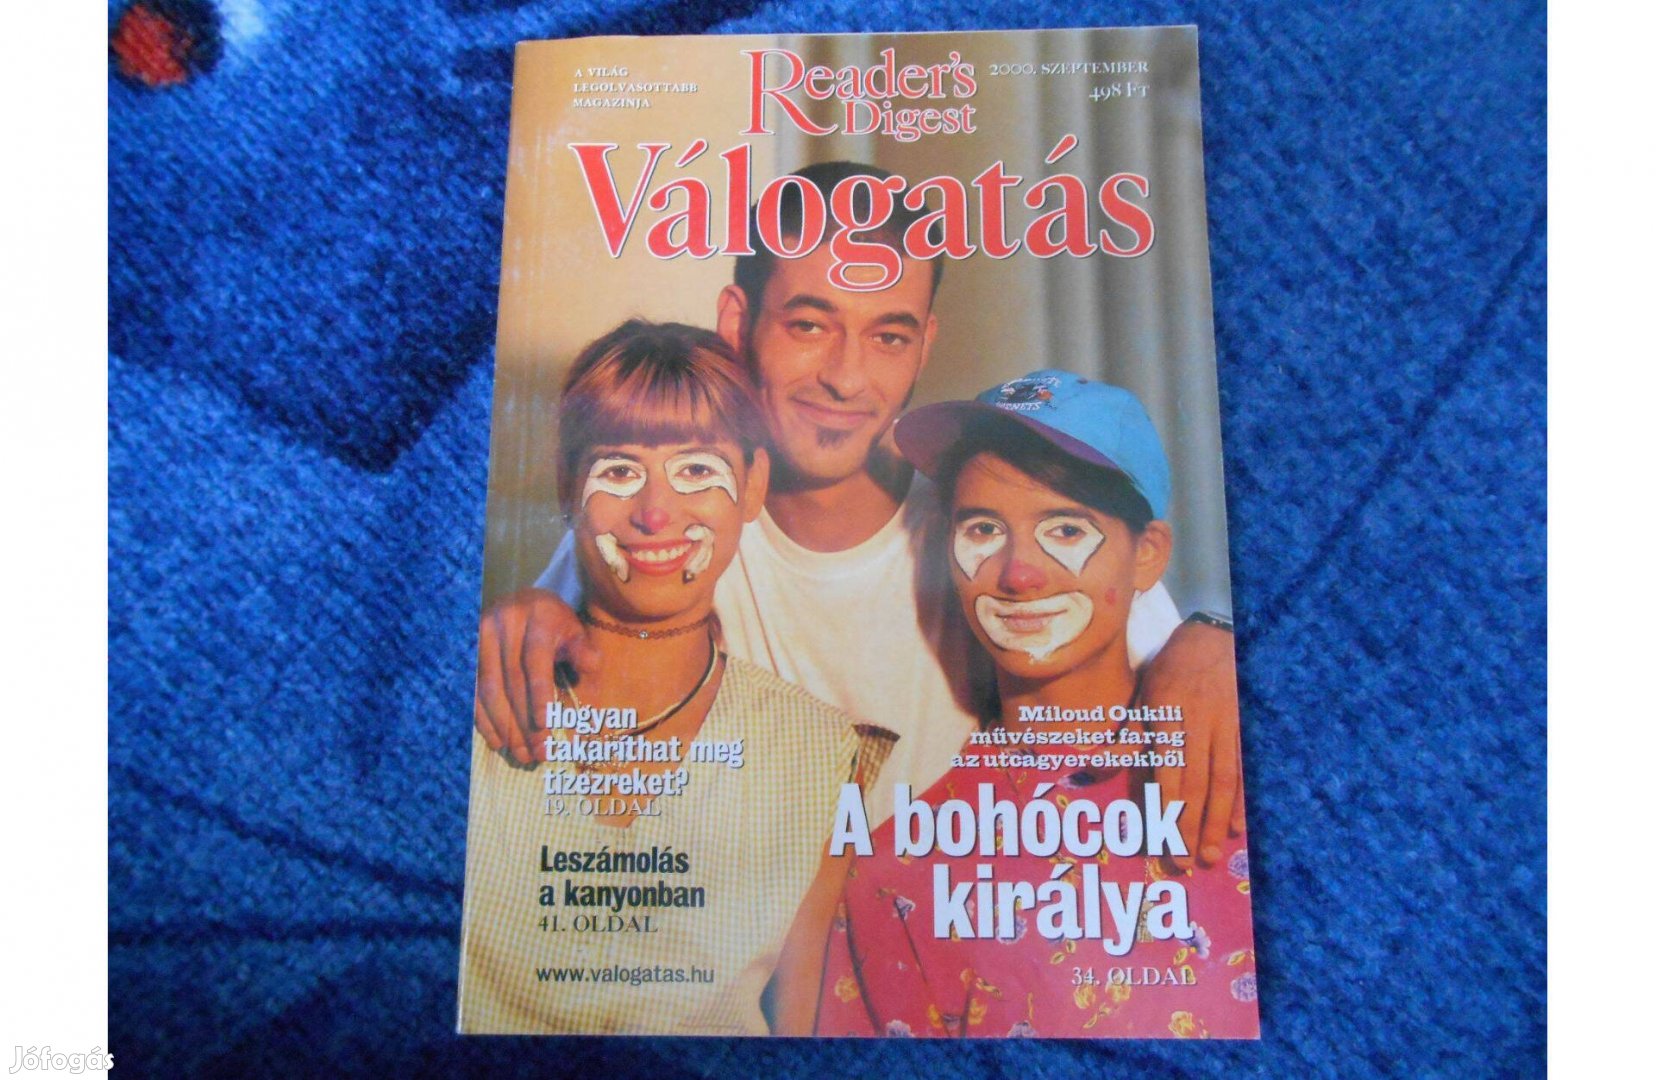 Reader's Digest magazin 2000 szeptember